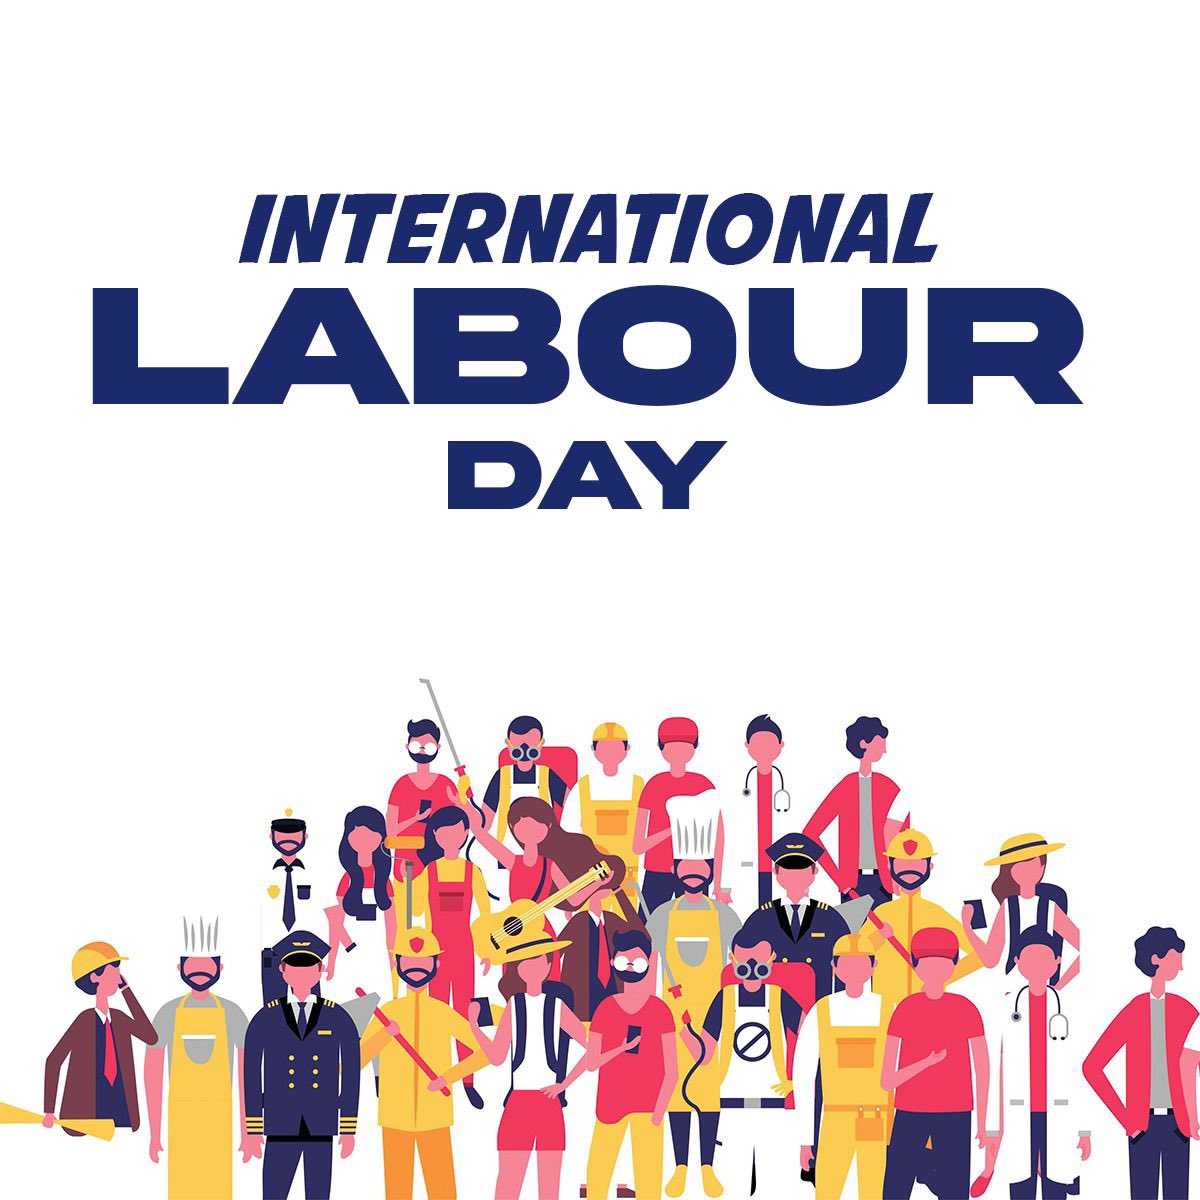 आज की मेहनत, कल का विकास। श्रमिक दिवस की हार्दिक शुभकामनाएं! #LabourDay